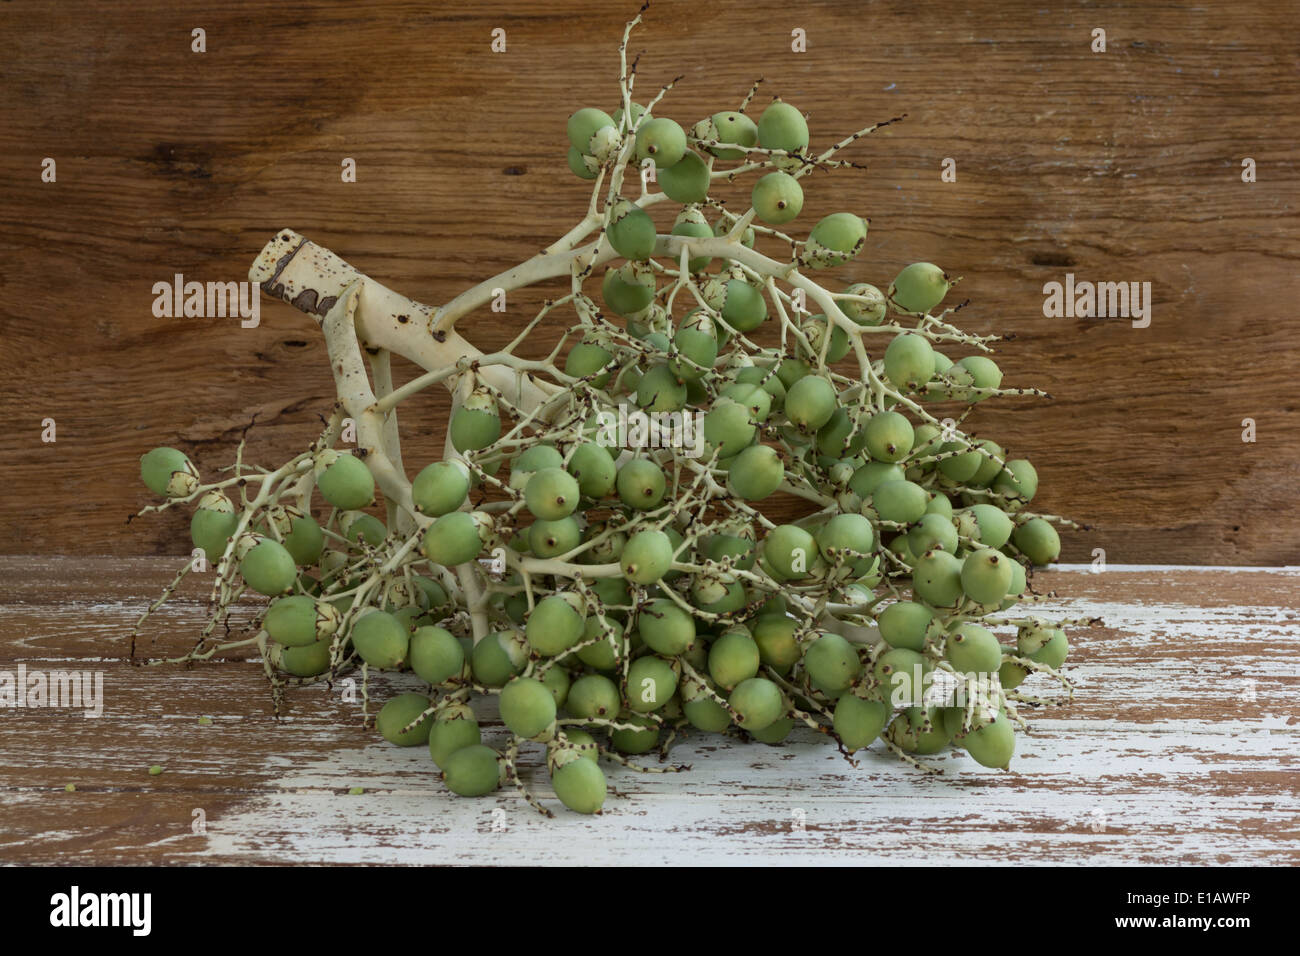 betel nut on wood background Stock Photo